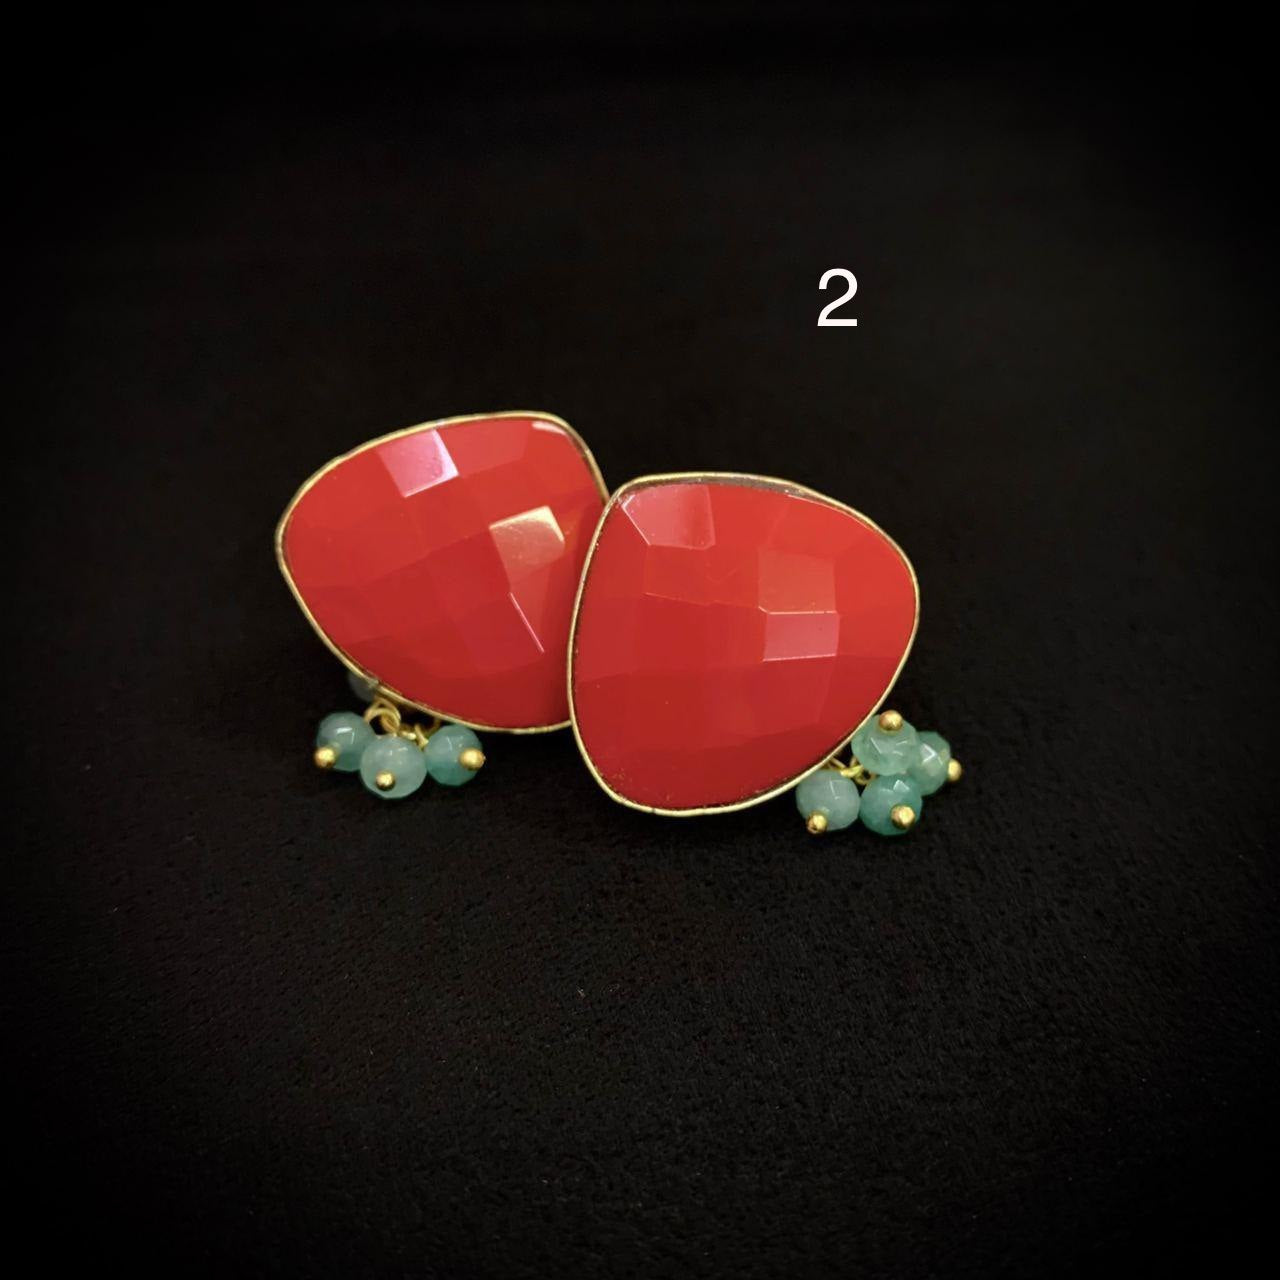 Monalisa earrings | exclusive earrings | Indian earrings | beads earrings